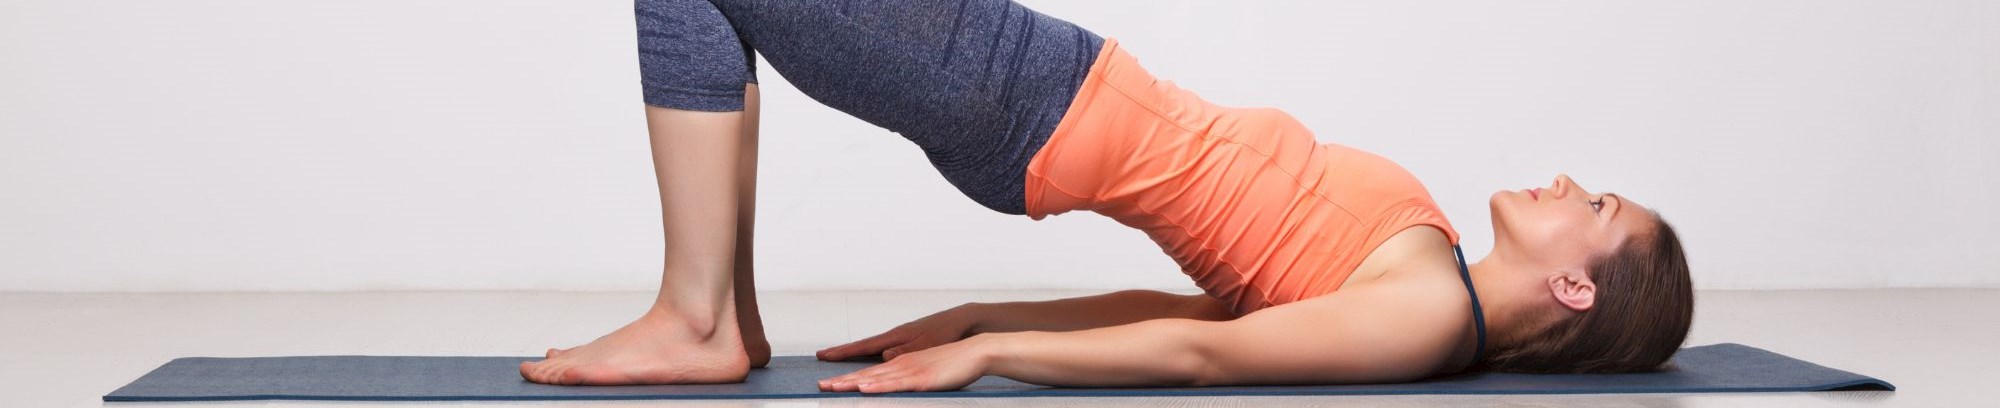 Yoga event styrke ro og balance 